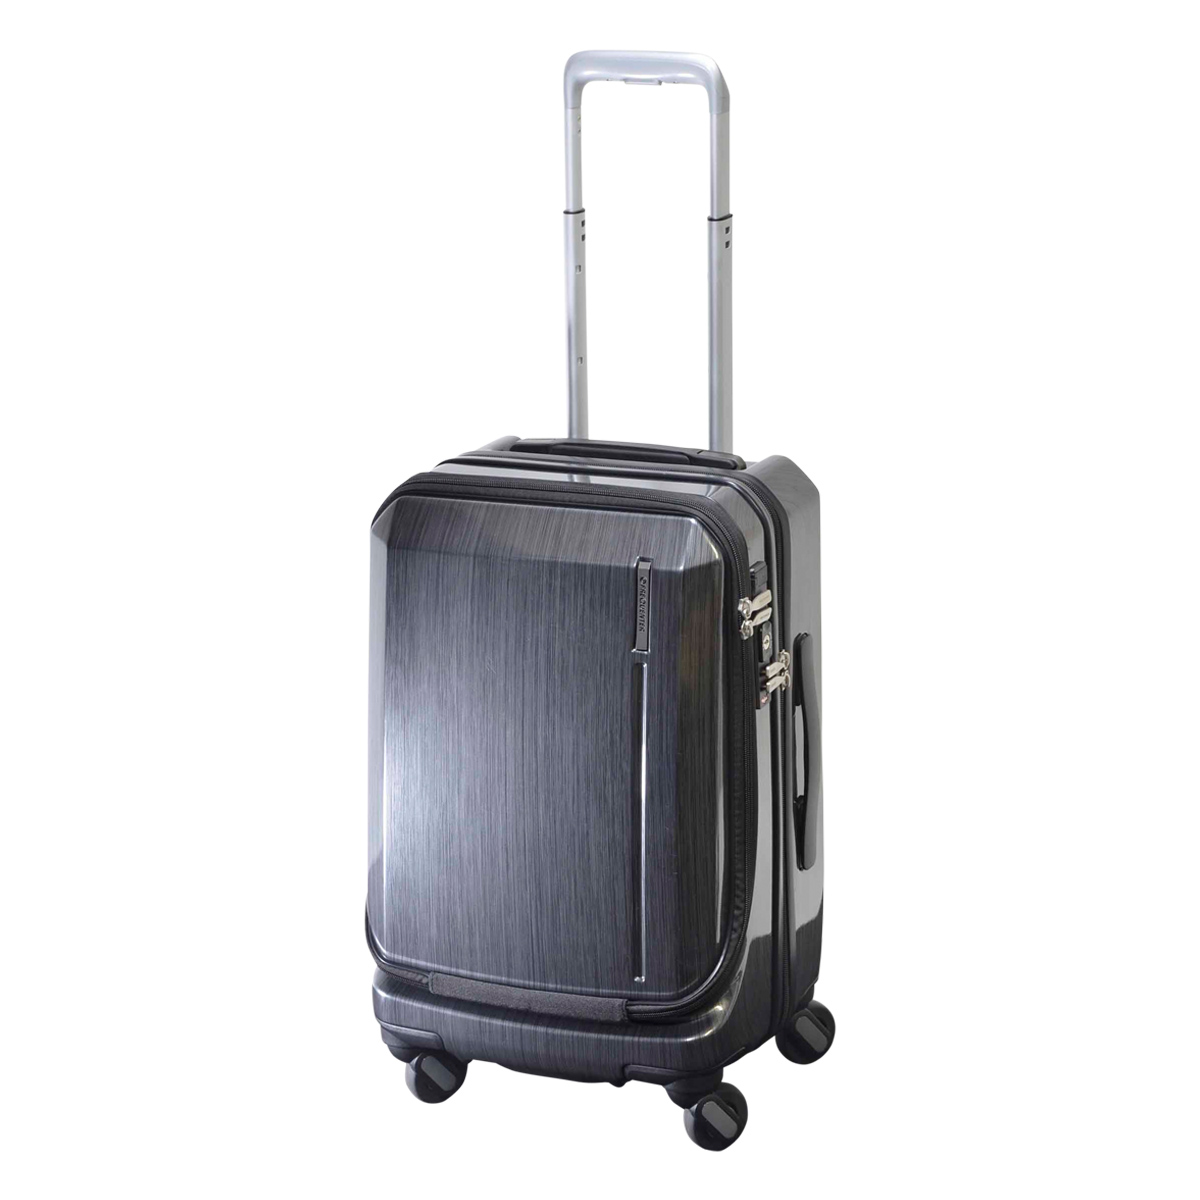 フリクエンター スーツケース 機内持ち込み 34L 48cm 3.6kg グランド 1-360 FREQUENTER ハード ファスナー  ビジネスキャリー キャリーバッグ キャリーケース